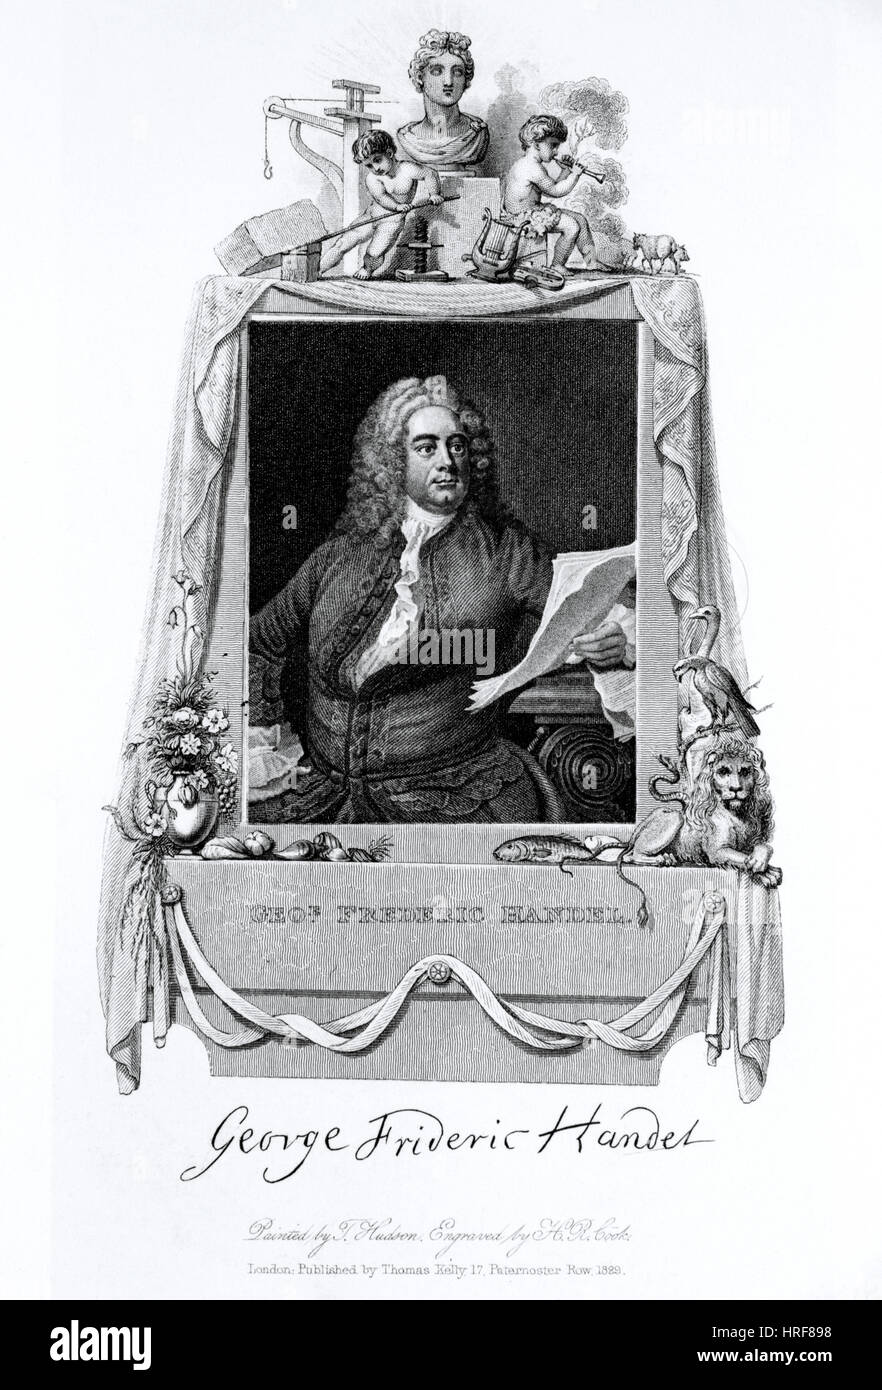 George Handel, compositor barroco alemán Foto de stock